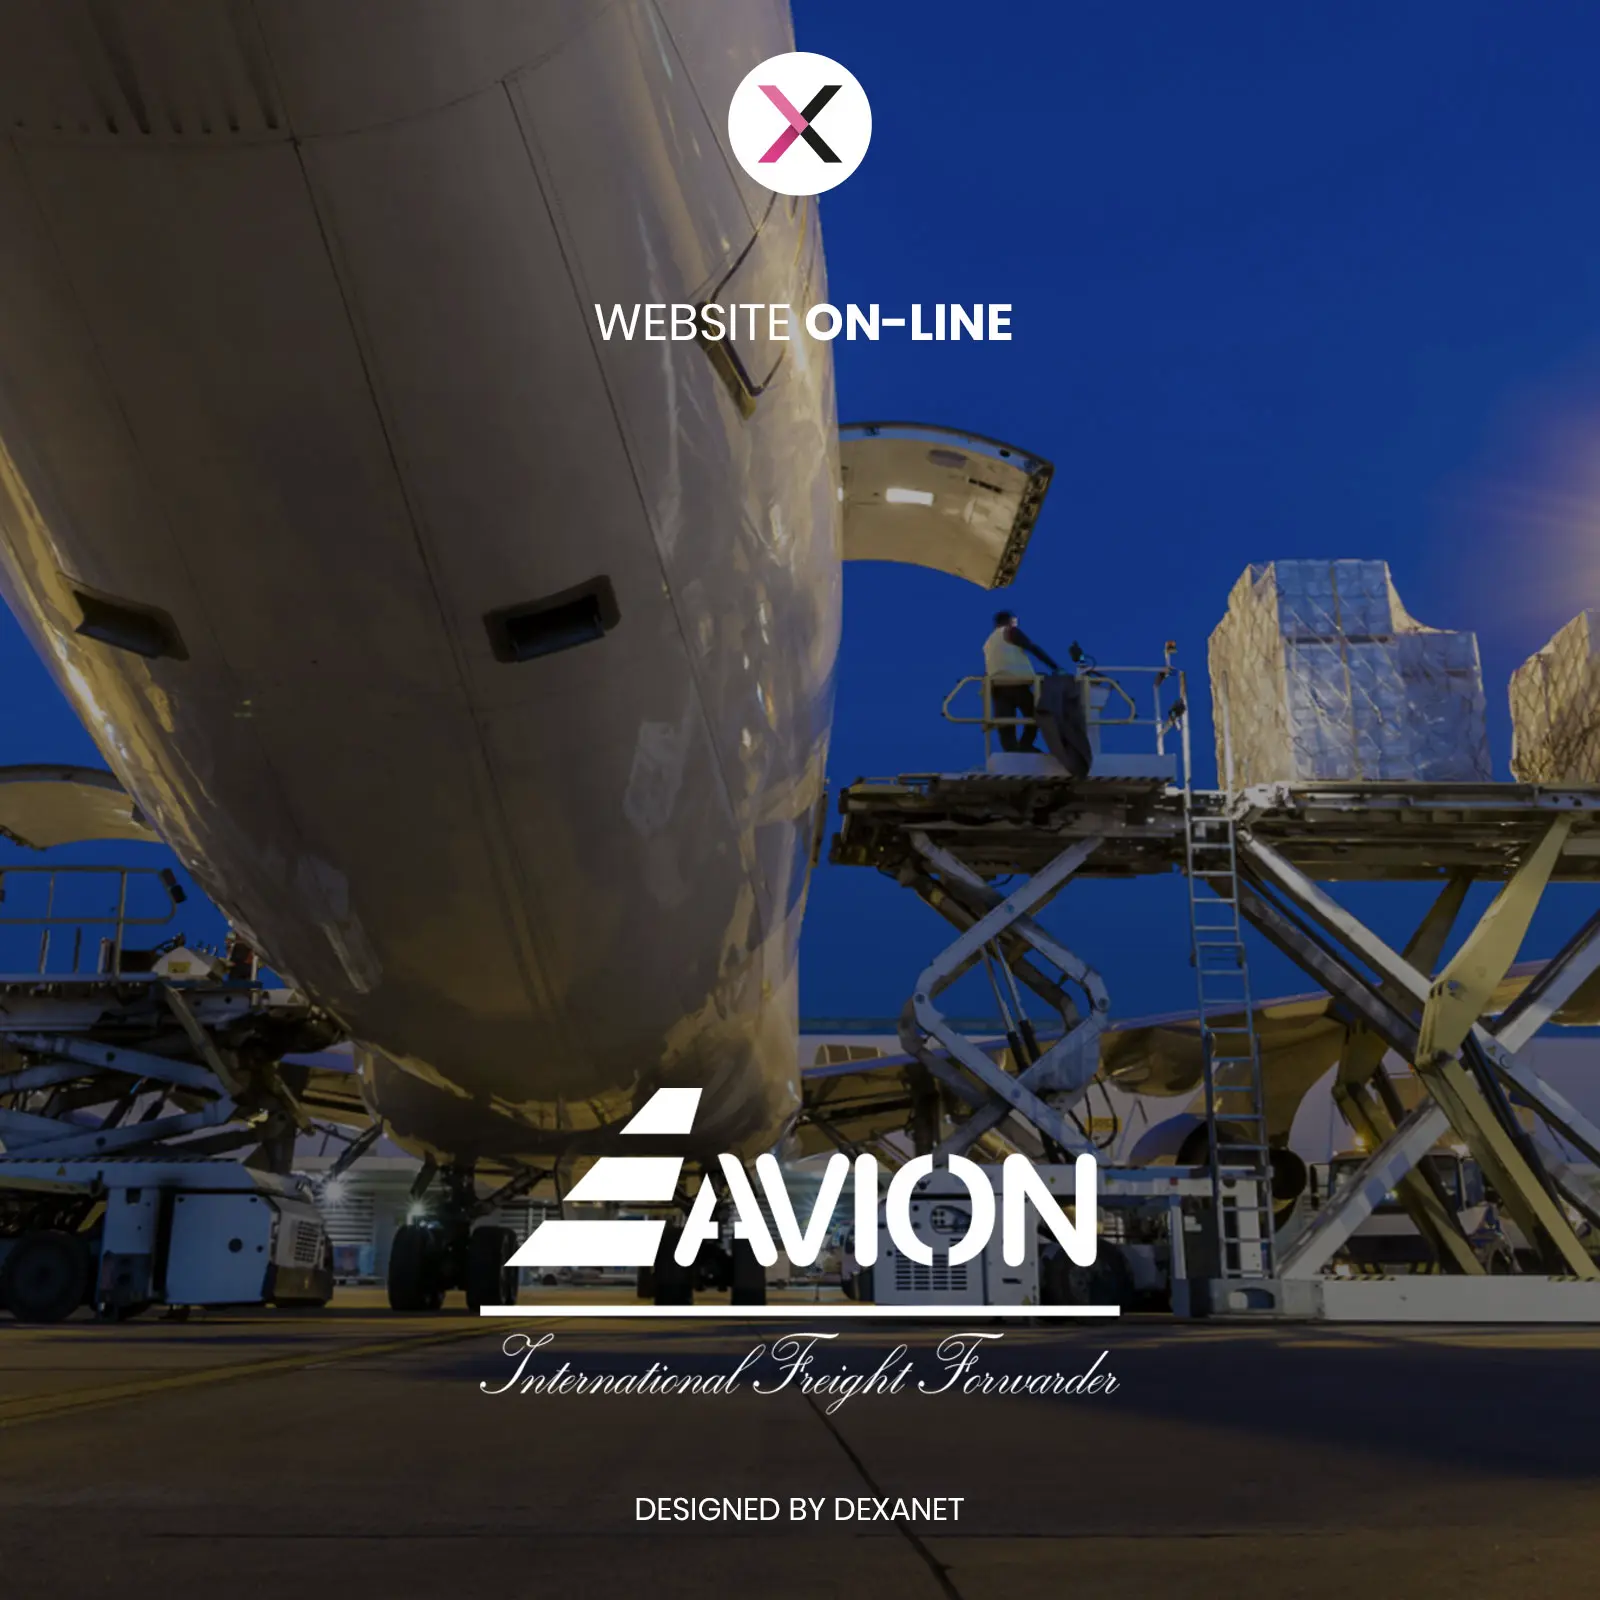 Si parte: è online il nuovo sito web di Avion, azienda di spedizioni internazionali.